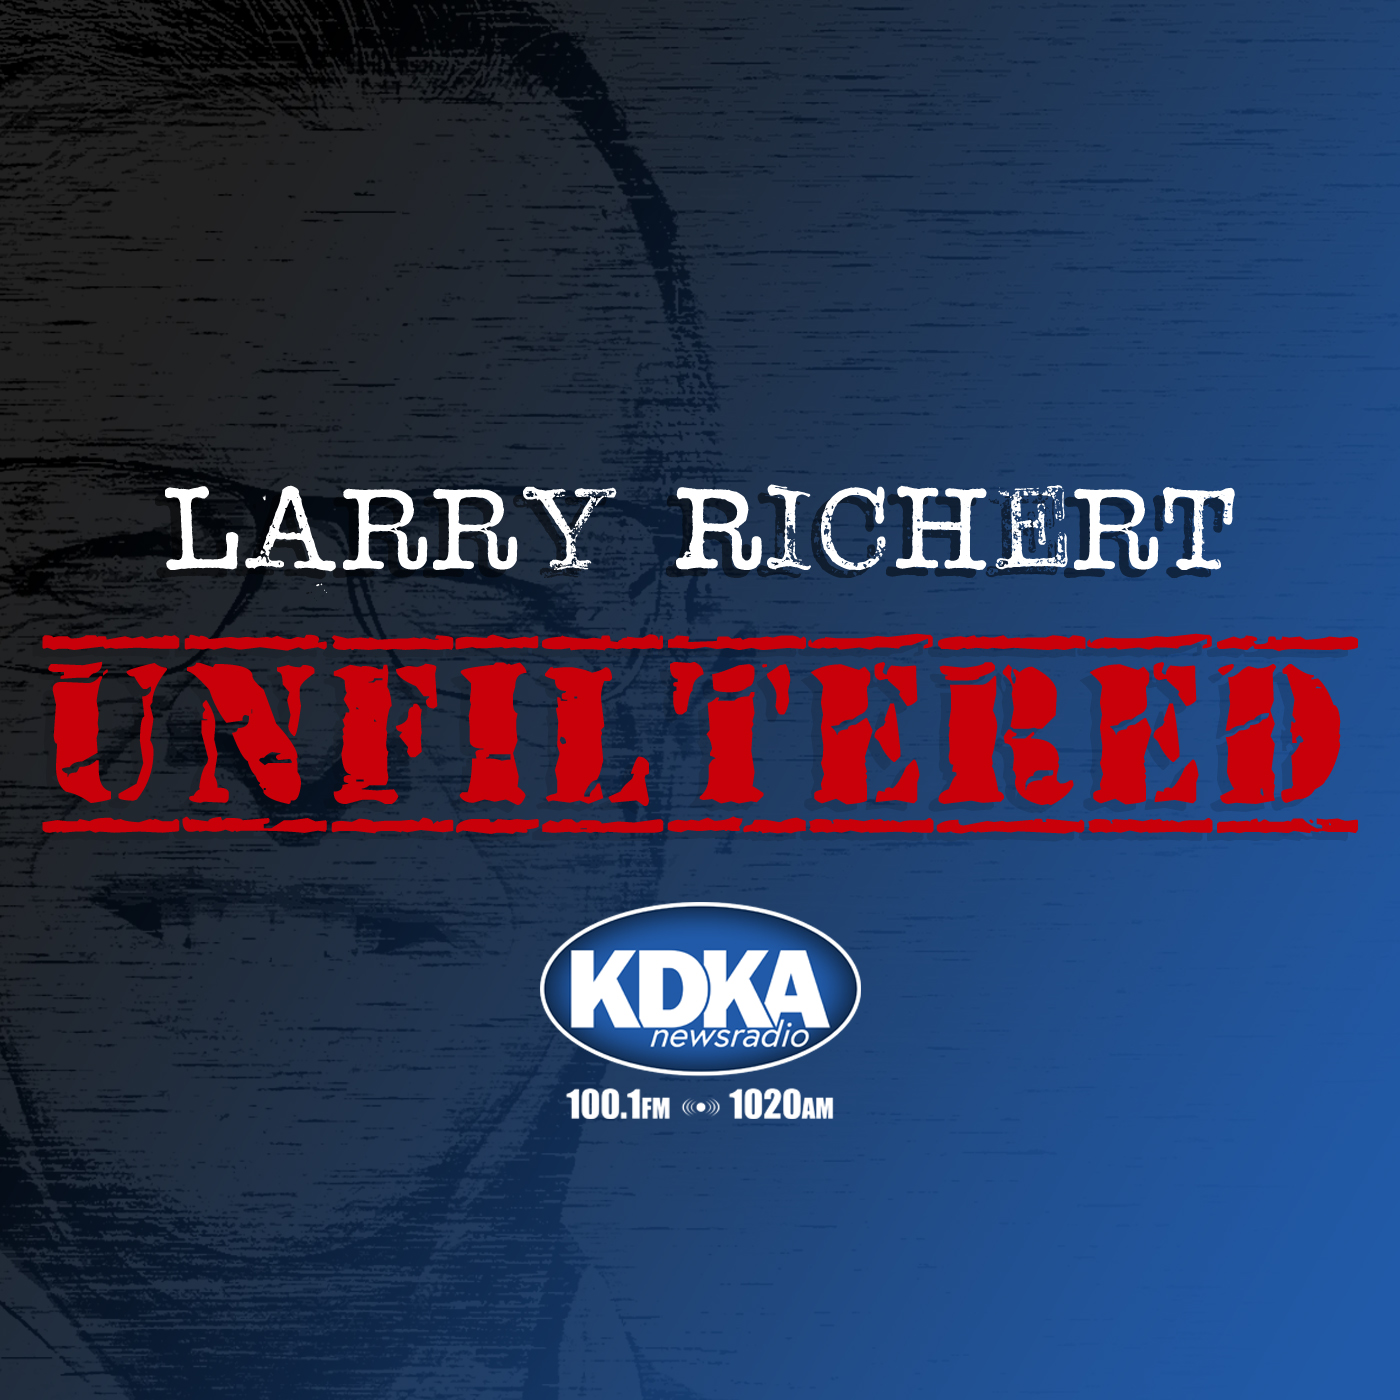 Larry Richert Unfiltered episode 25